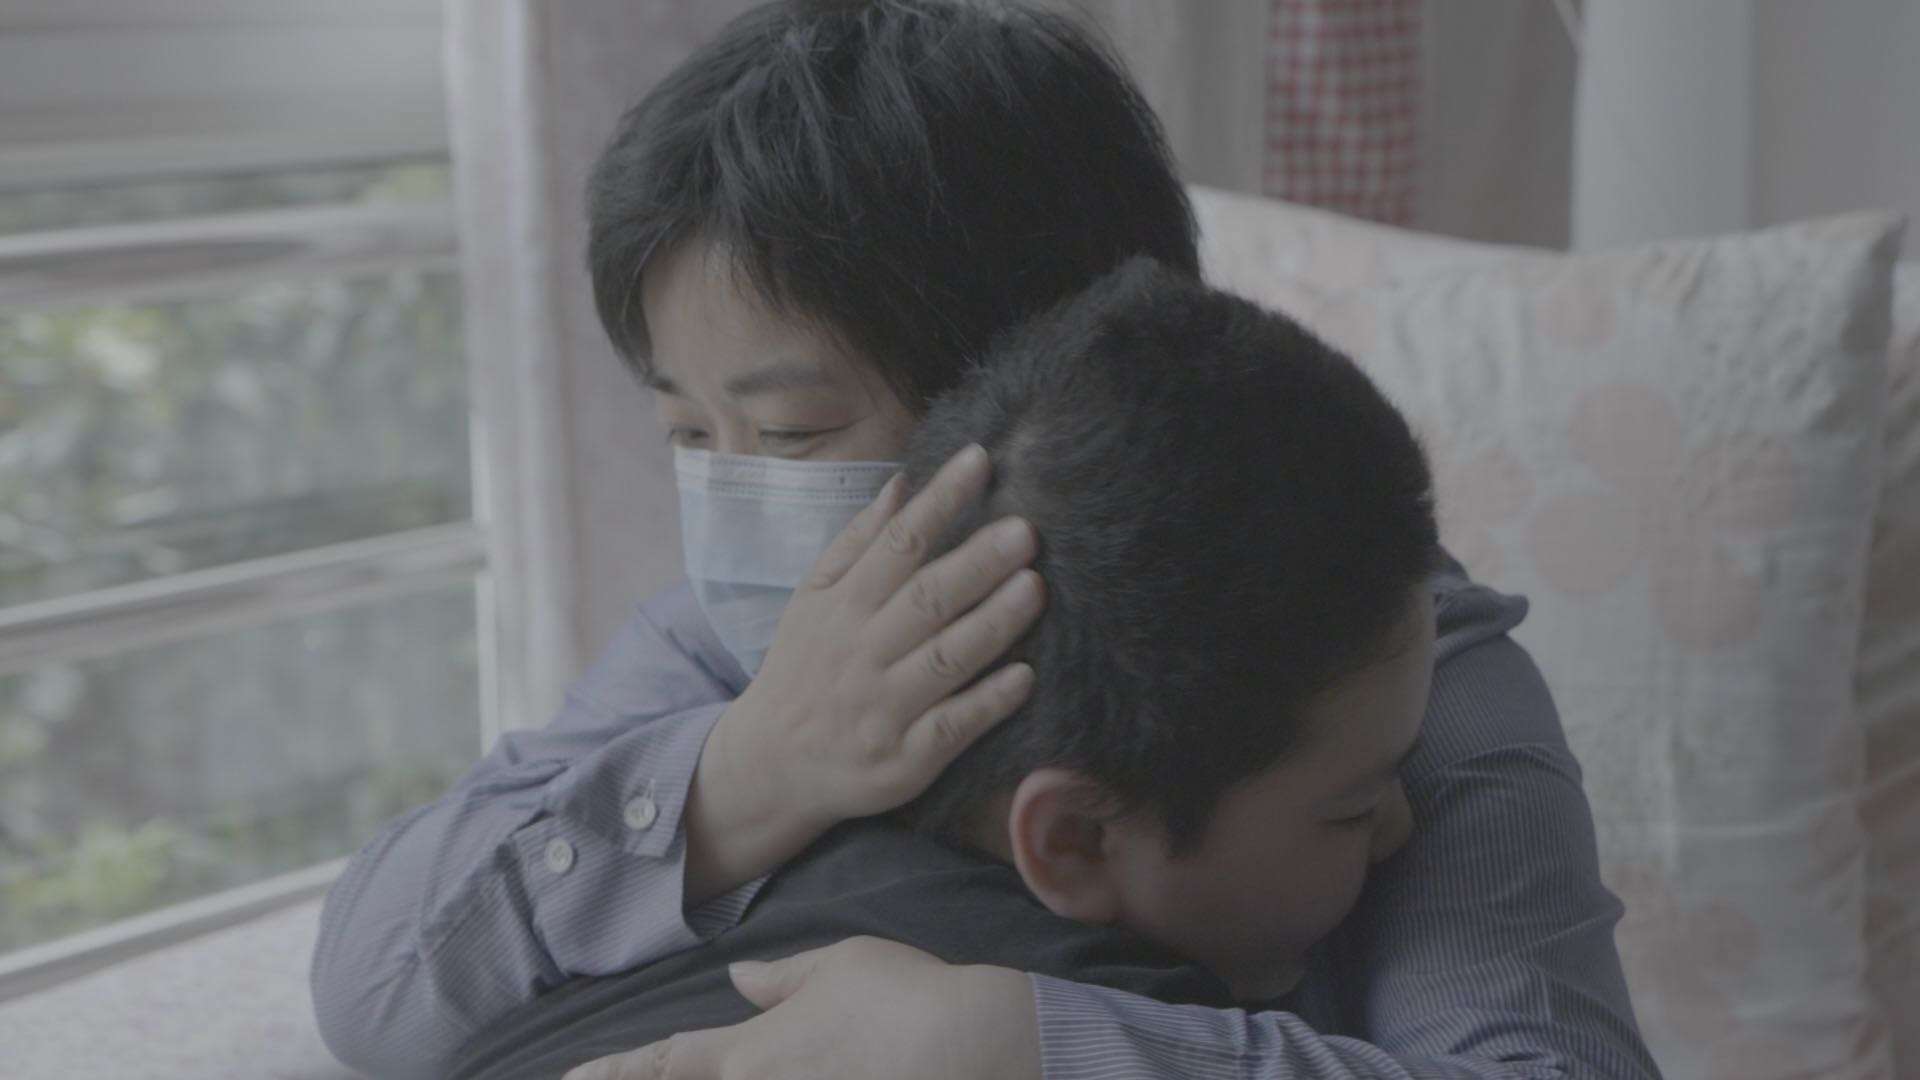 【纪录短片】害怕拥抱孩子的武汉网格员